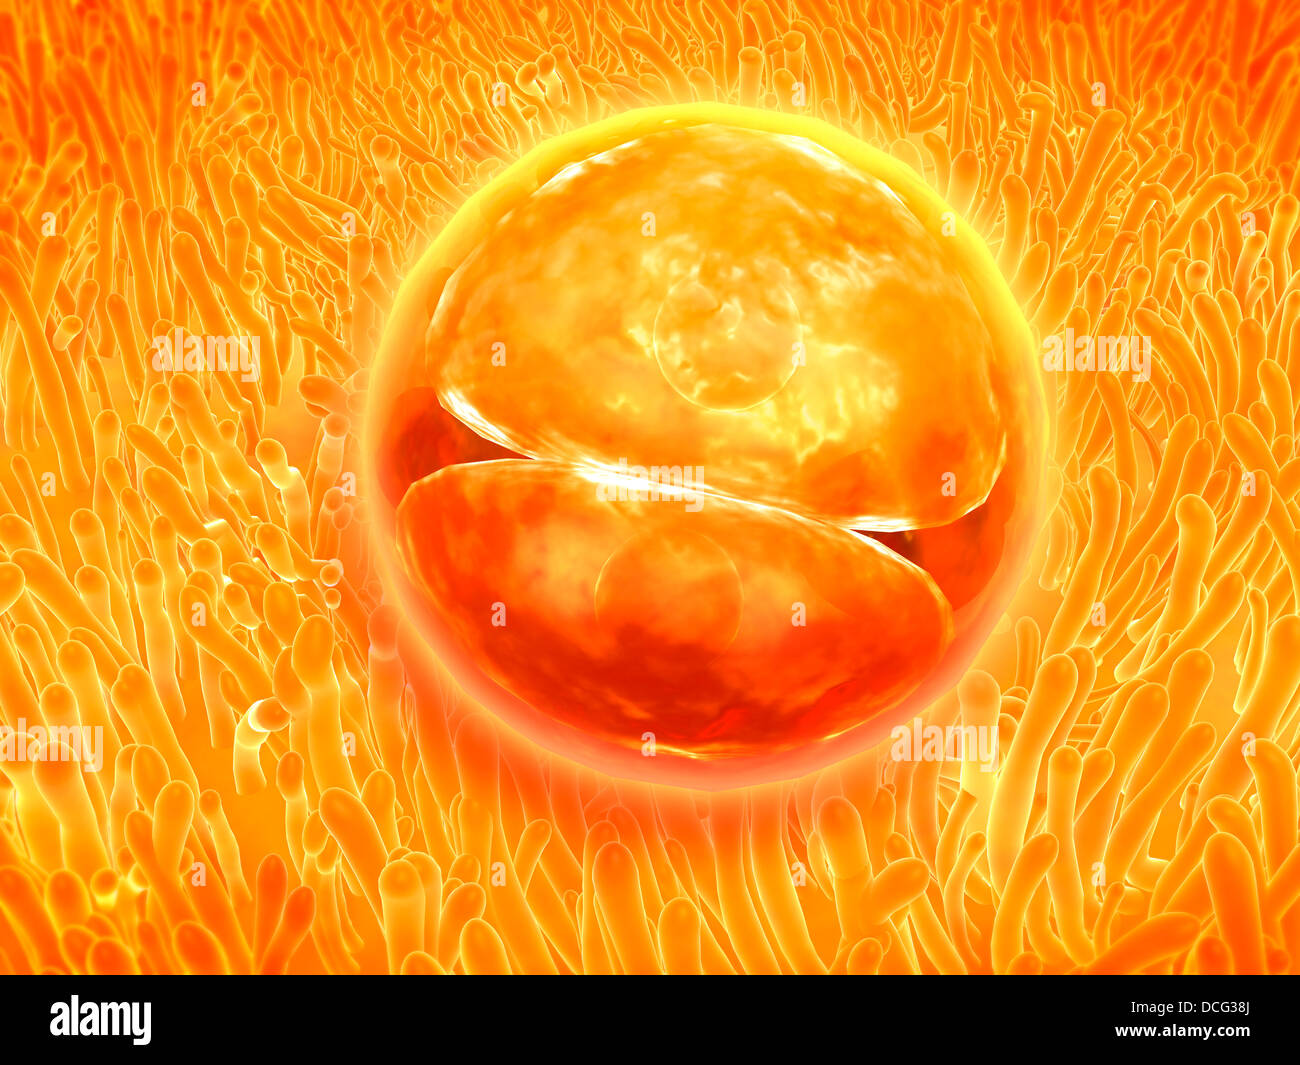 Desarrollo embrionario de 24-36 horas después de la fertilización. Foto de stock